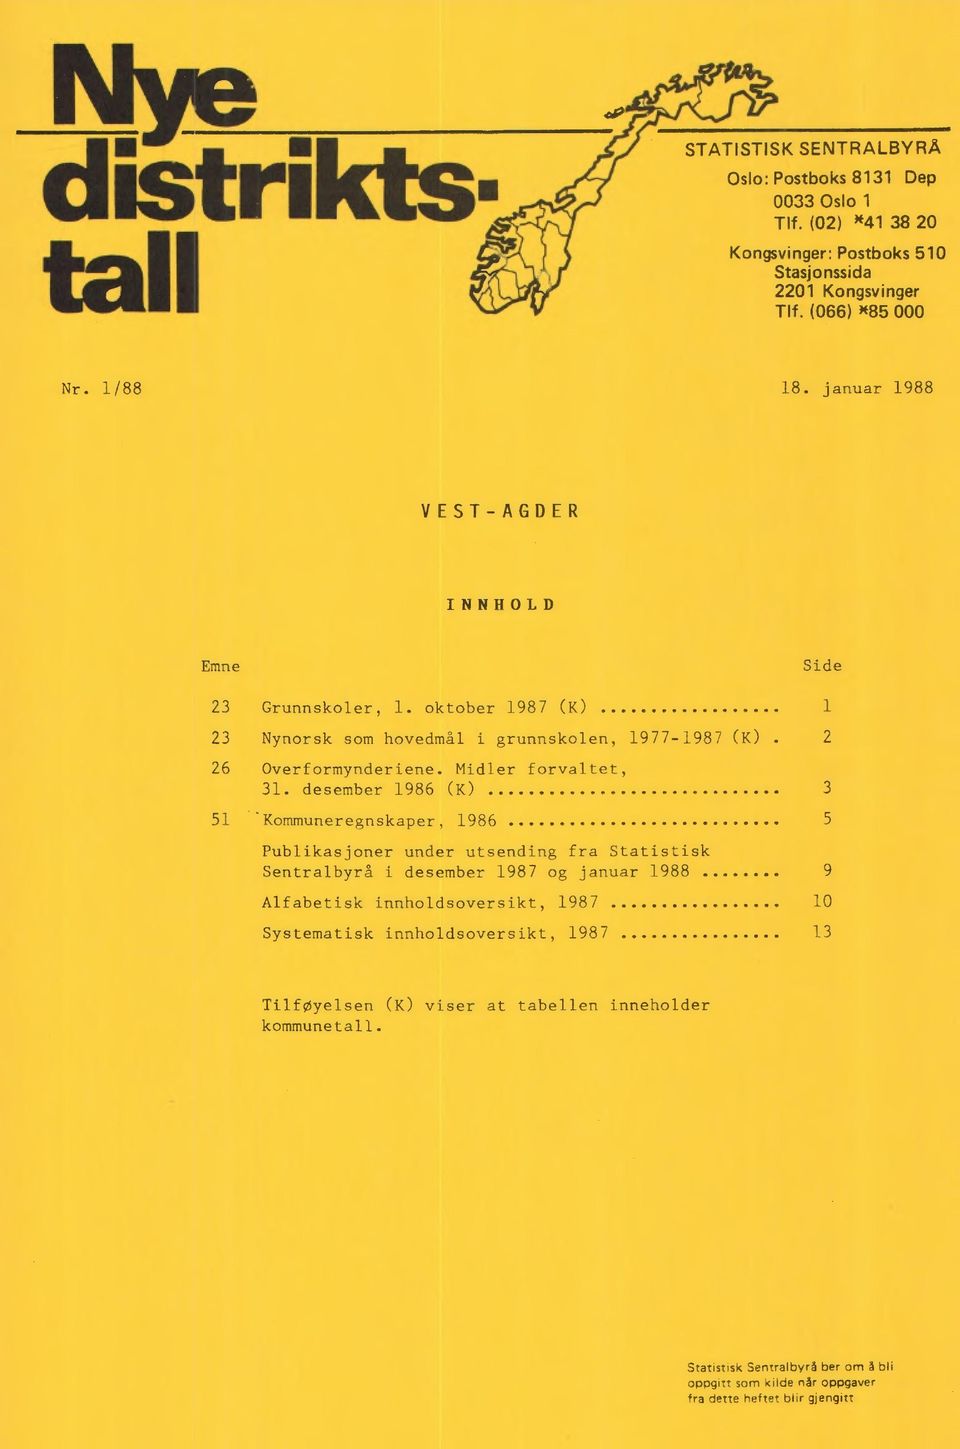 desember 1986 (K) 3 51 Kommuneregnskaper, 1986 5 Publikasjoner under utsending fra Statistisk Sentralbyrå i desember 1987 og januar 1988 9